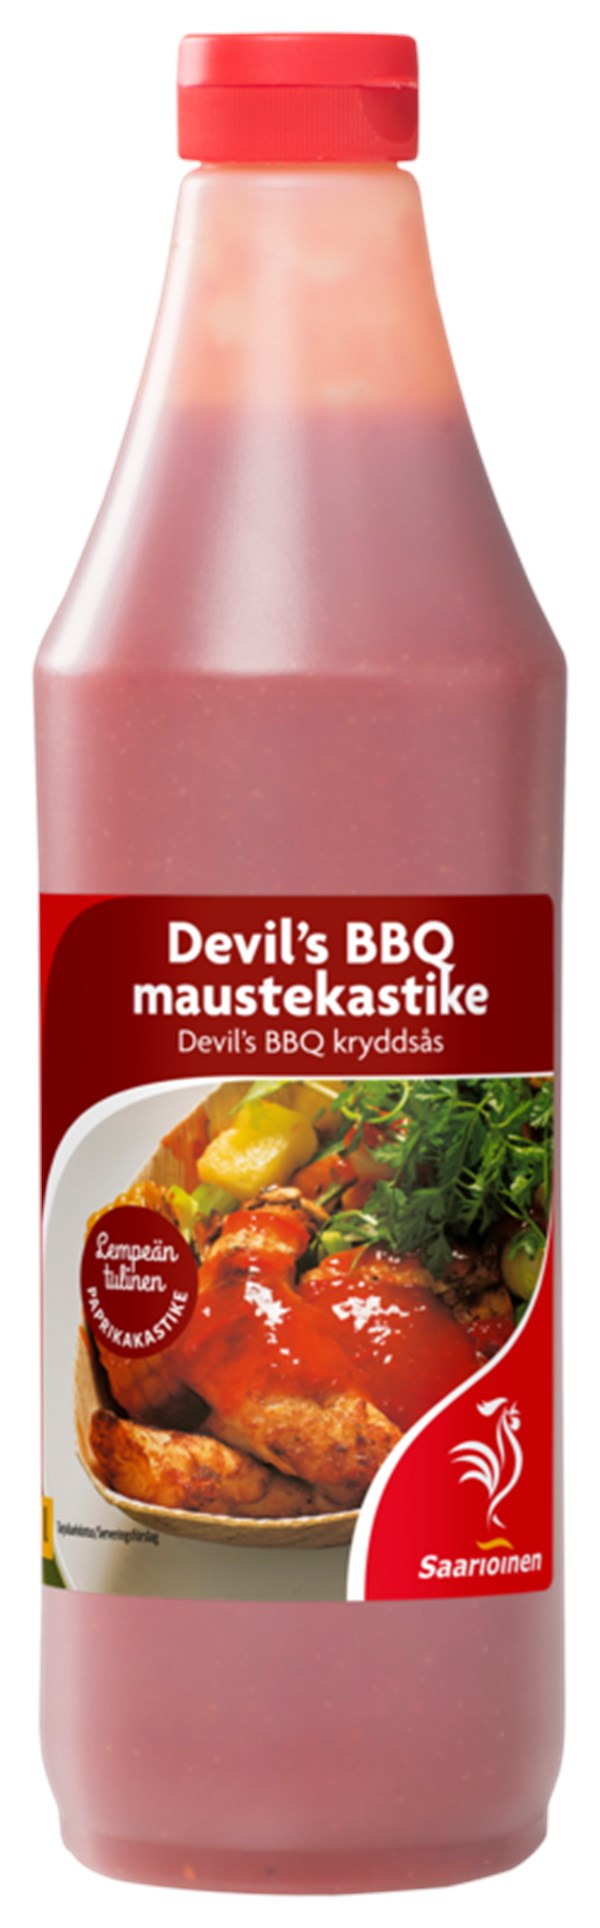 Devil's BBQ maustekastike 6 x 1 l